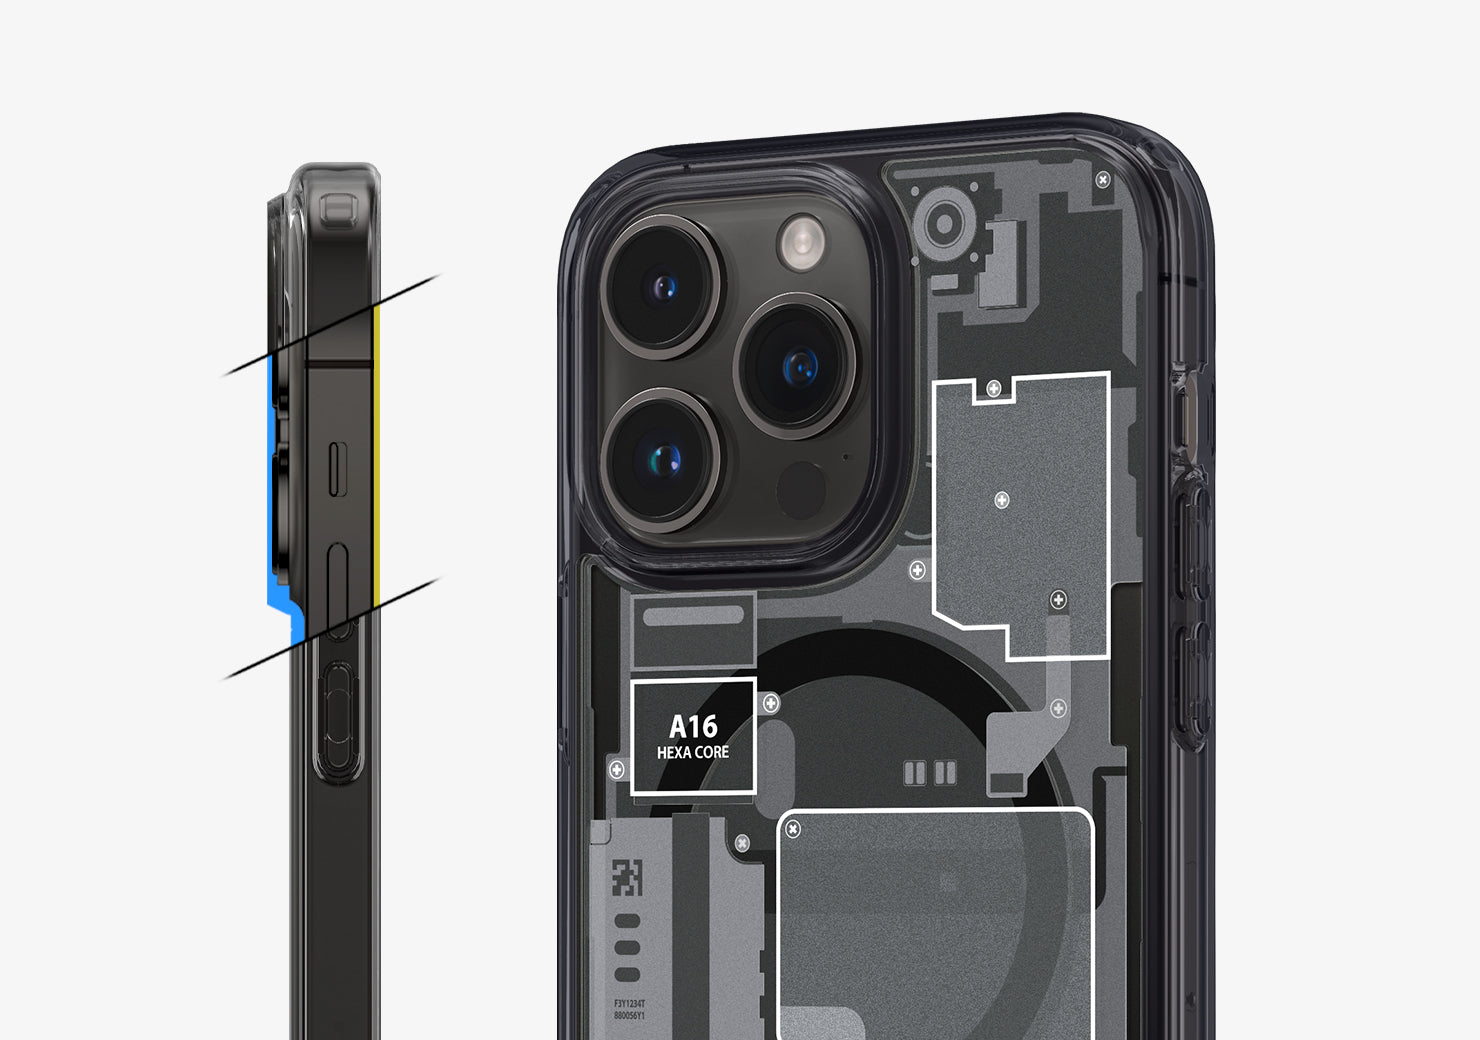 Spigen iPhone 14 Pro Case Ultra Hybrid Mag Zero One